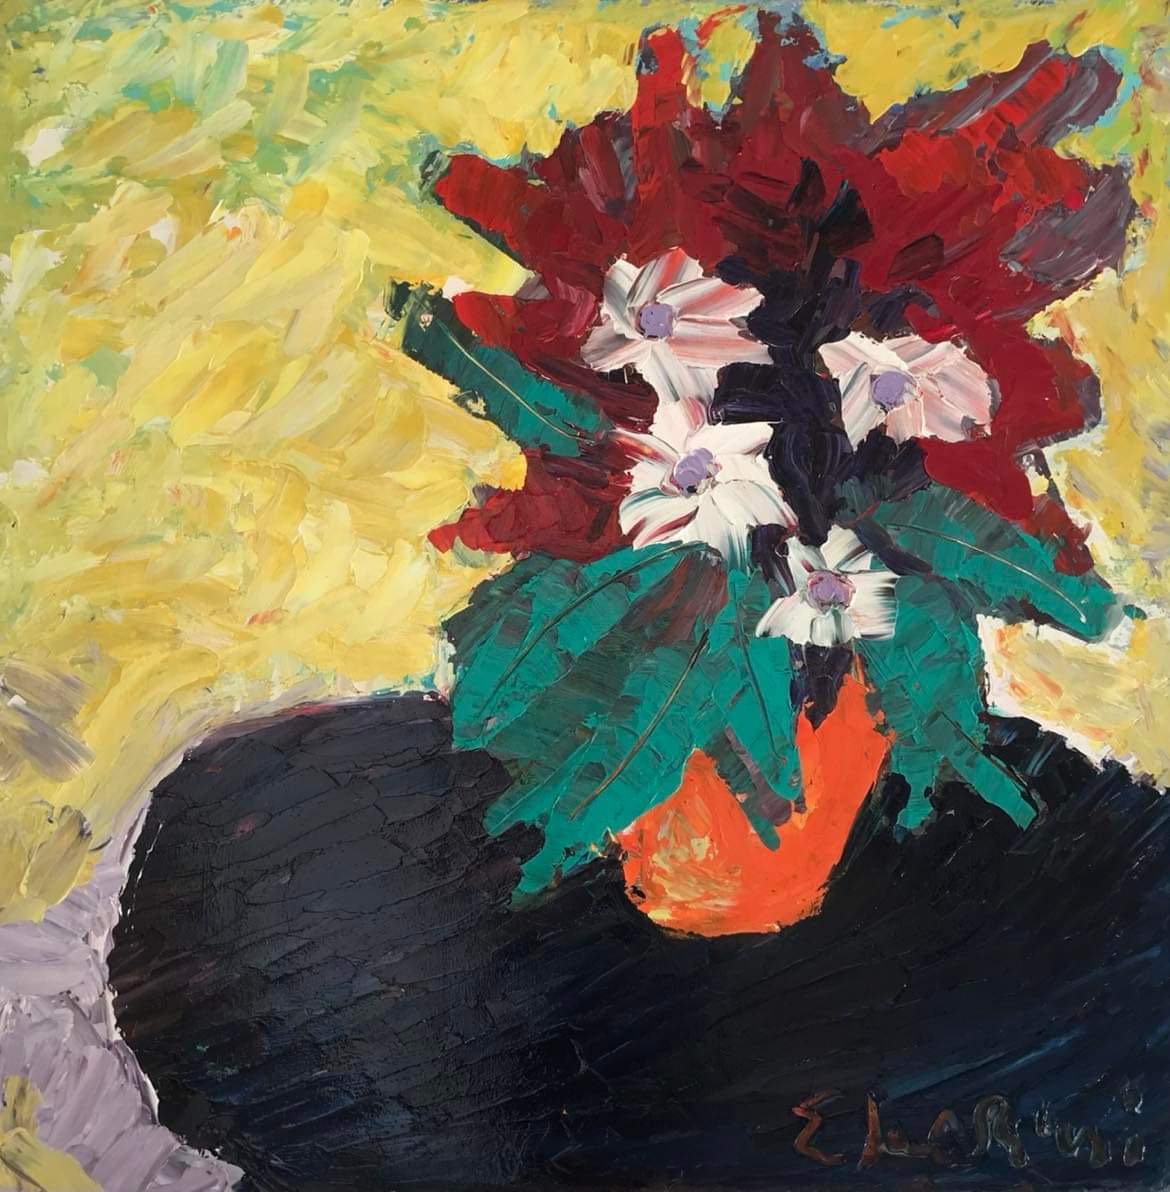 Quadro del pittore Eugenio Guarini - 2161 Vaso di fiori